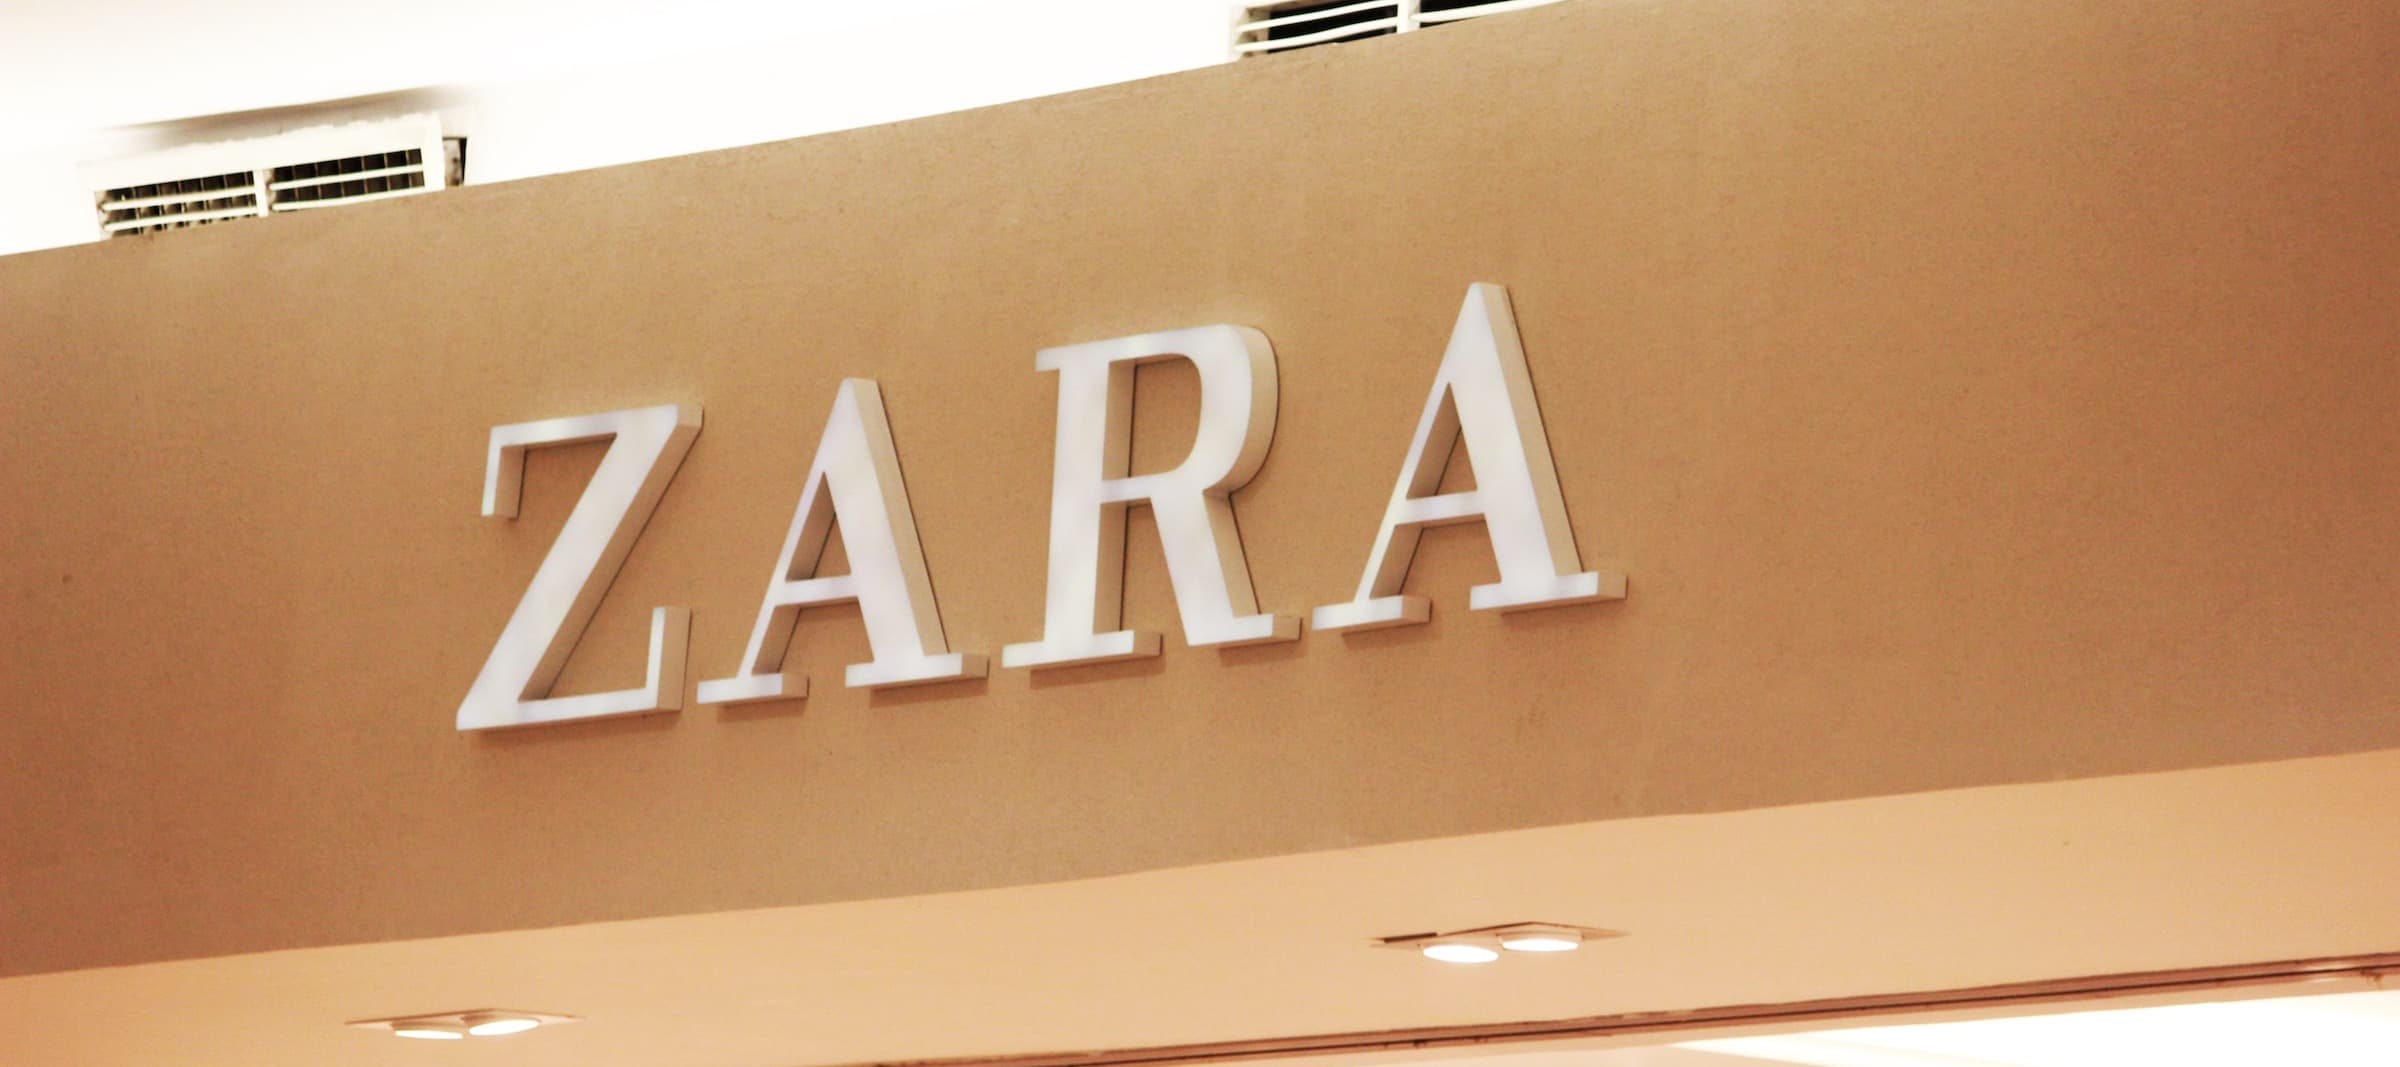 Фото новости: "Владелец Zara хочет передать российский бизнес партнеру из «дружественной» страны"